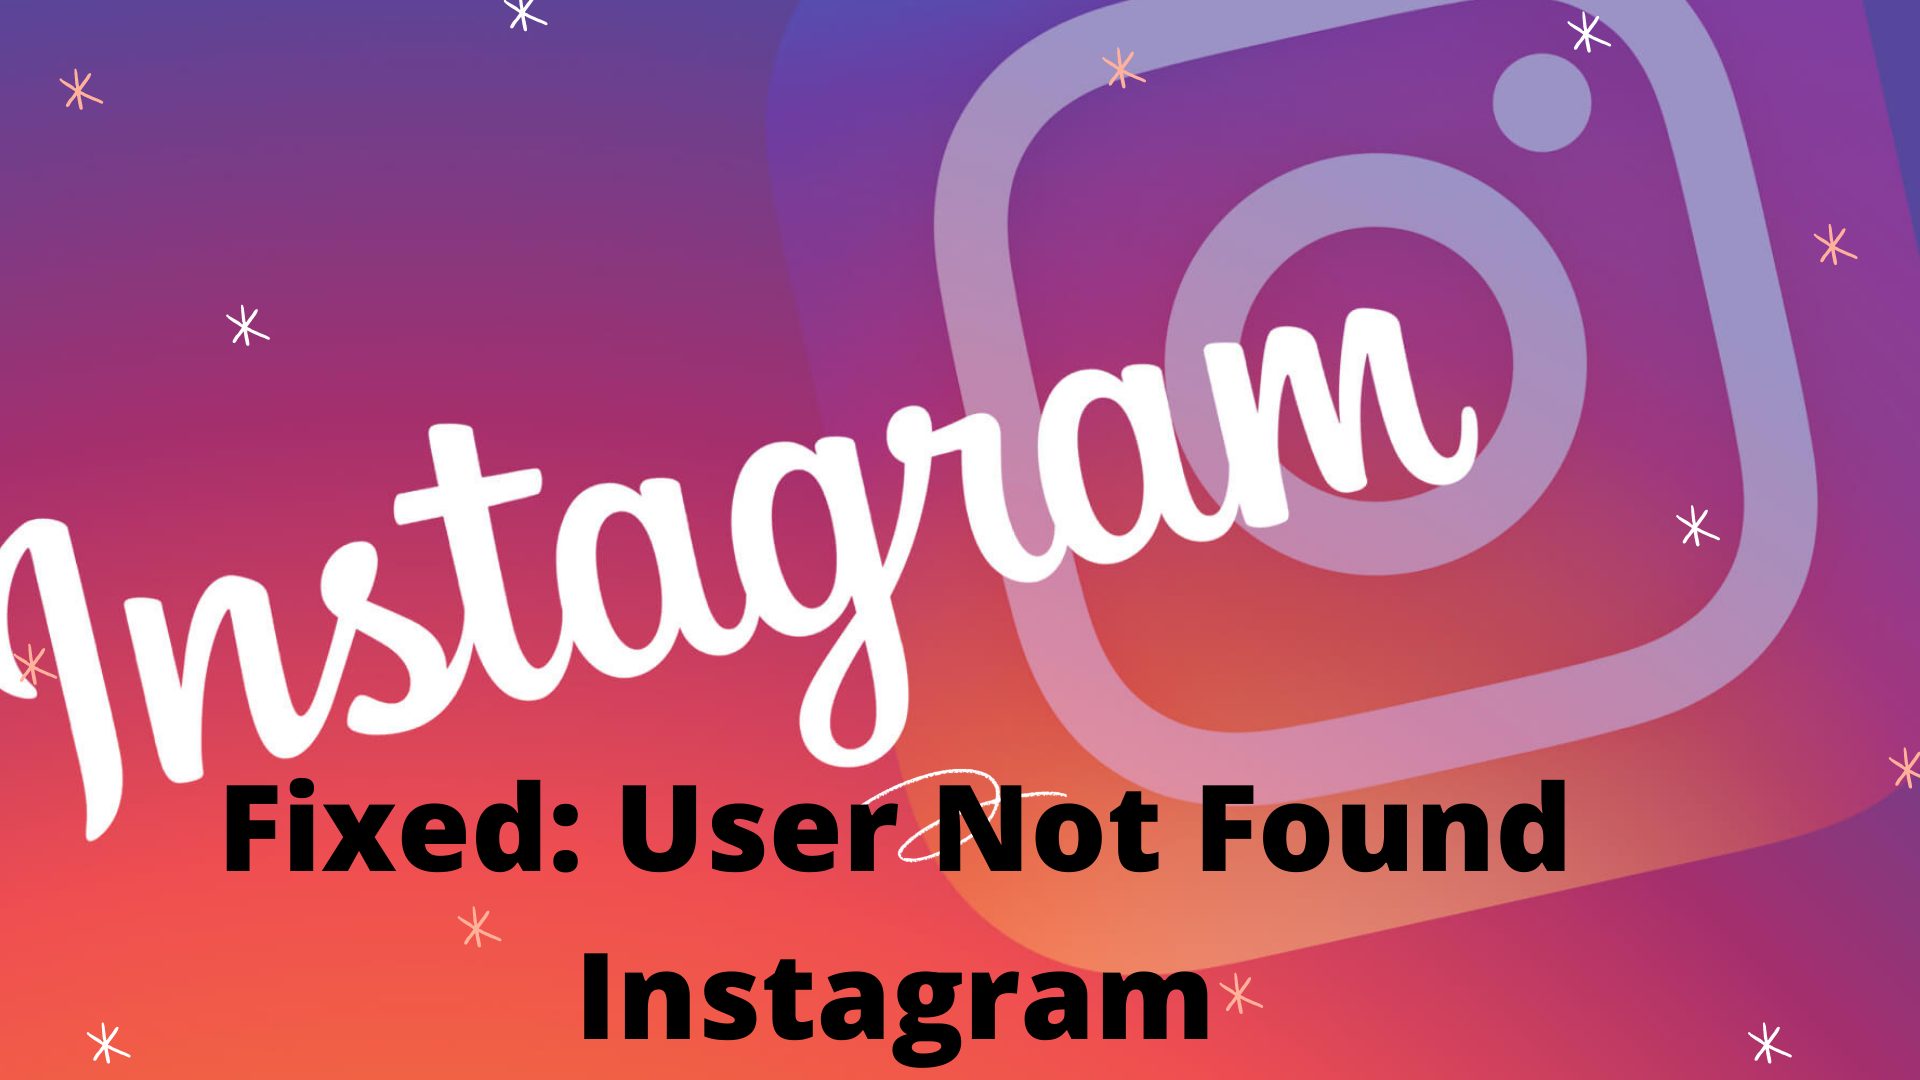 User not found on Instagram